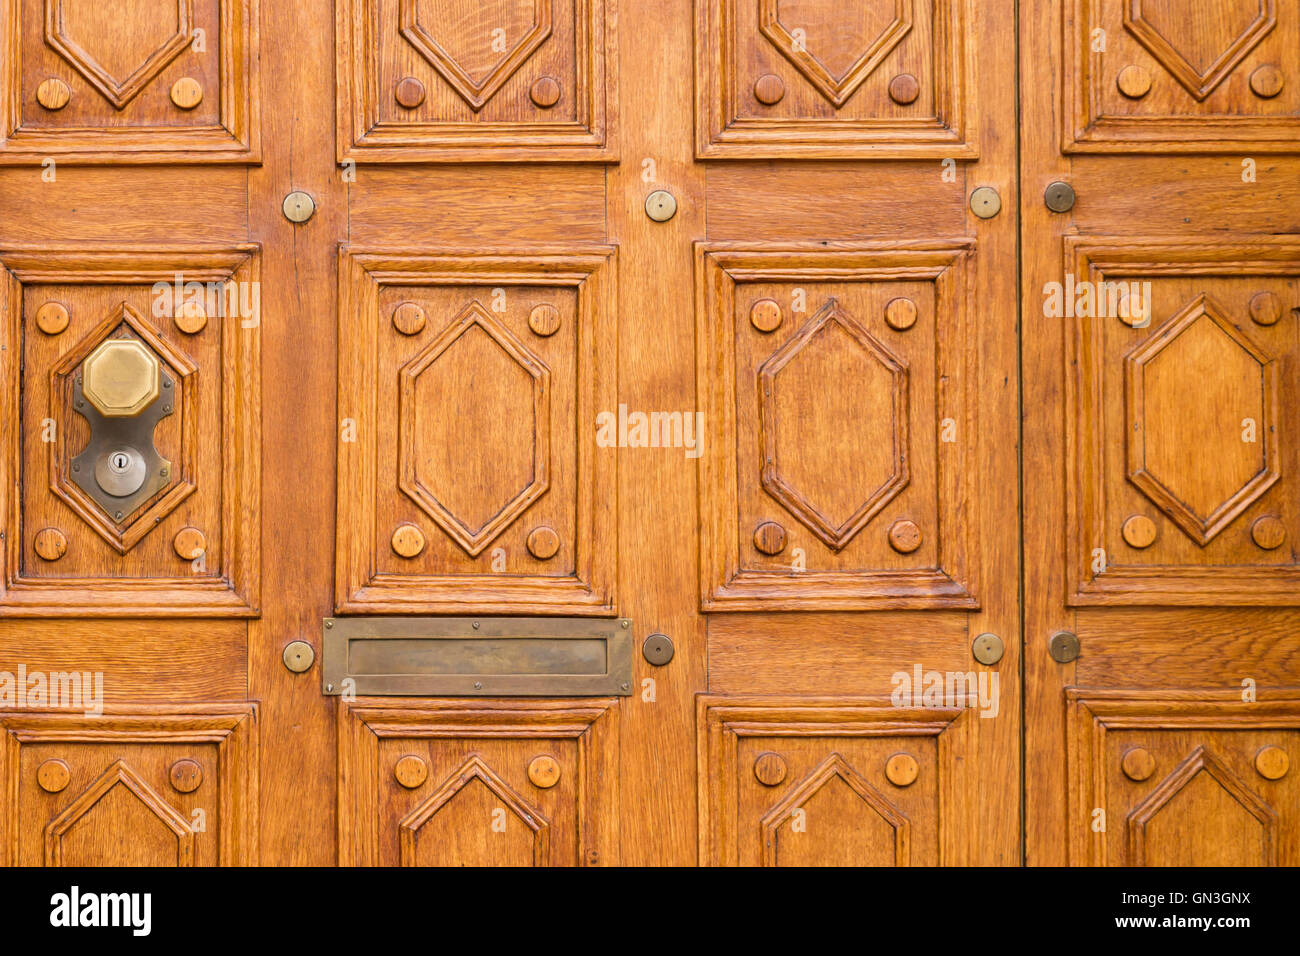 Cerrar vista de una elegante puerta tallada en madera de color marrón claro con patrón cuadrado y un octágono la perilla de la puerta en el lado izquierdo. Foto de stock